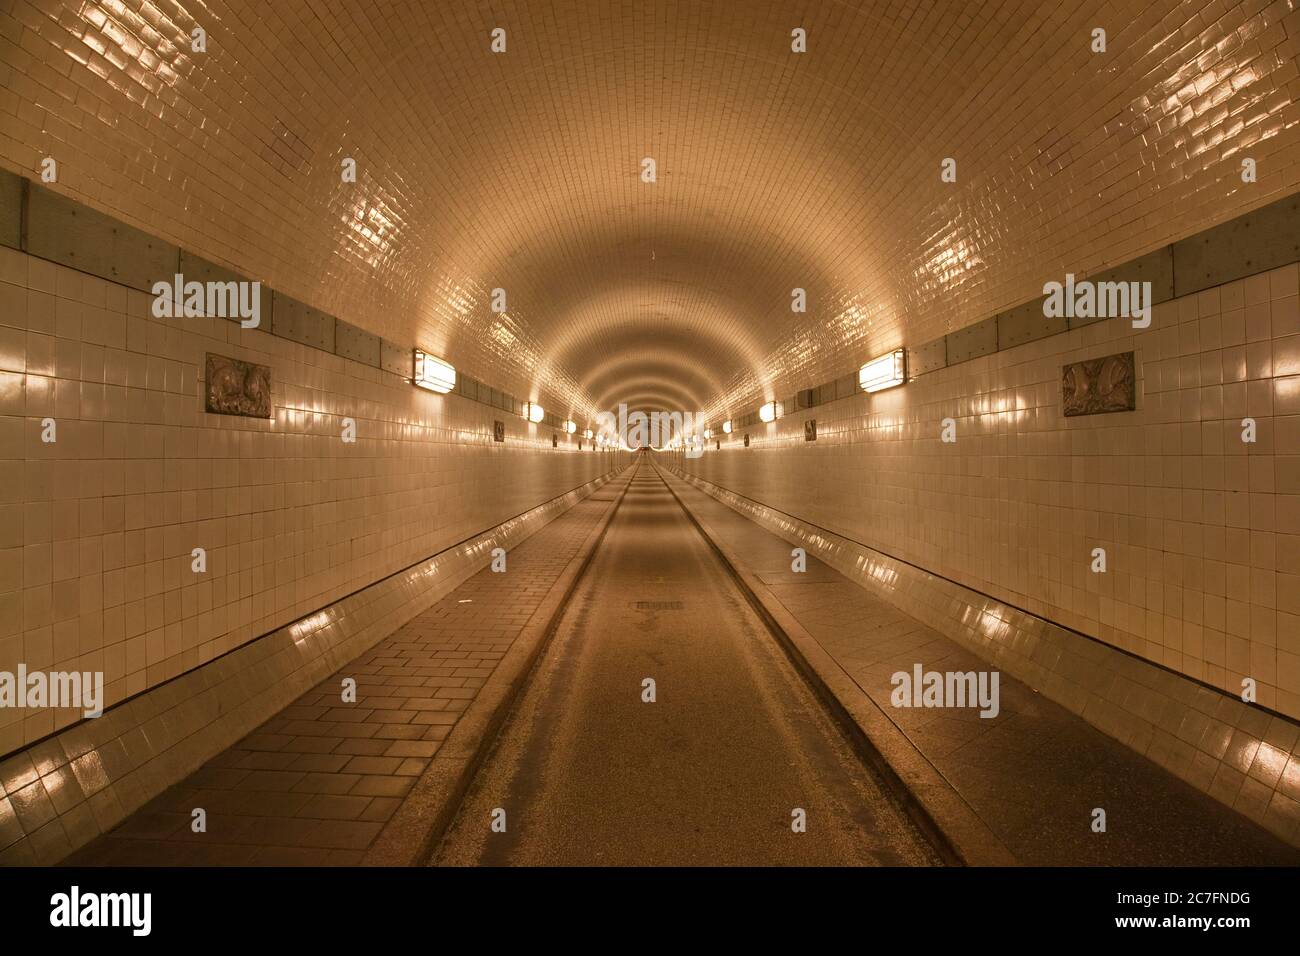 Allemagne, Hambourg, ancien tunnel de l'Elbe dans la ville hanséatique de Hambourg. Banque D'Images